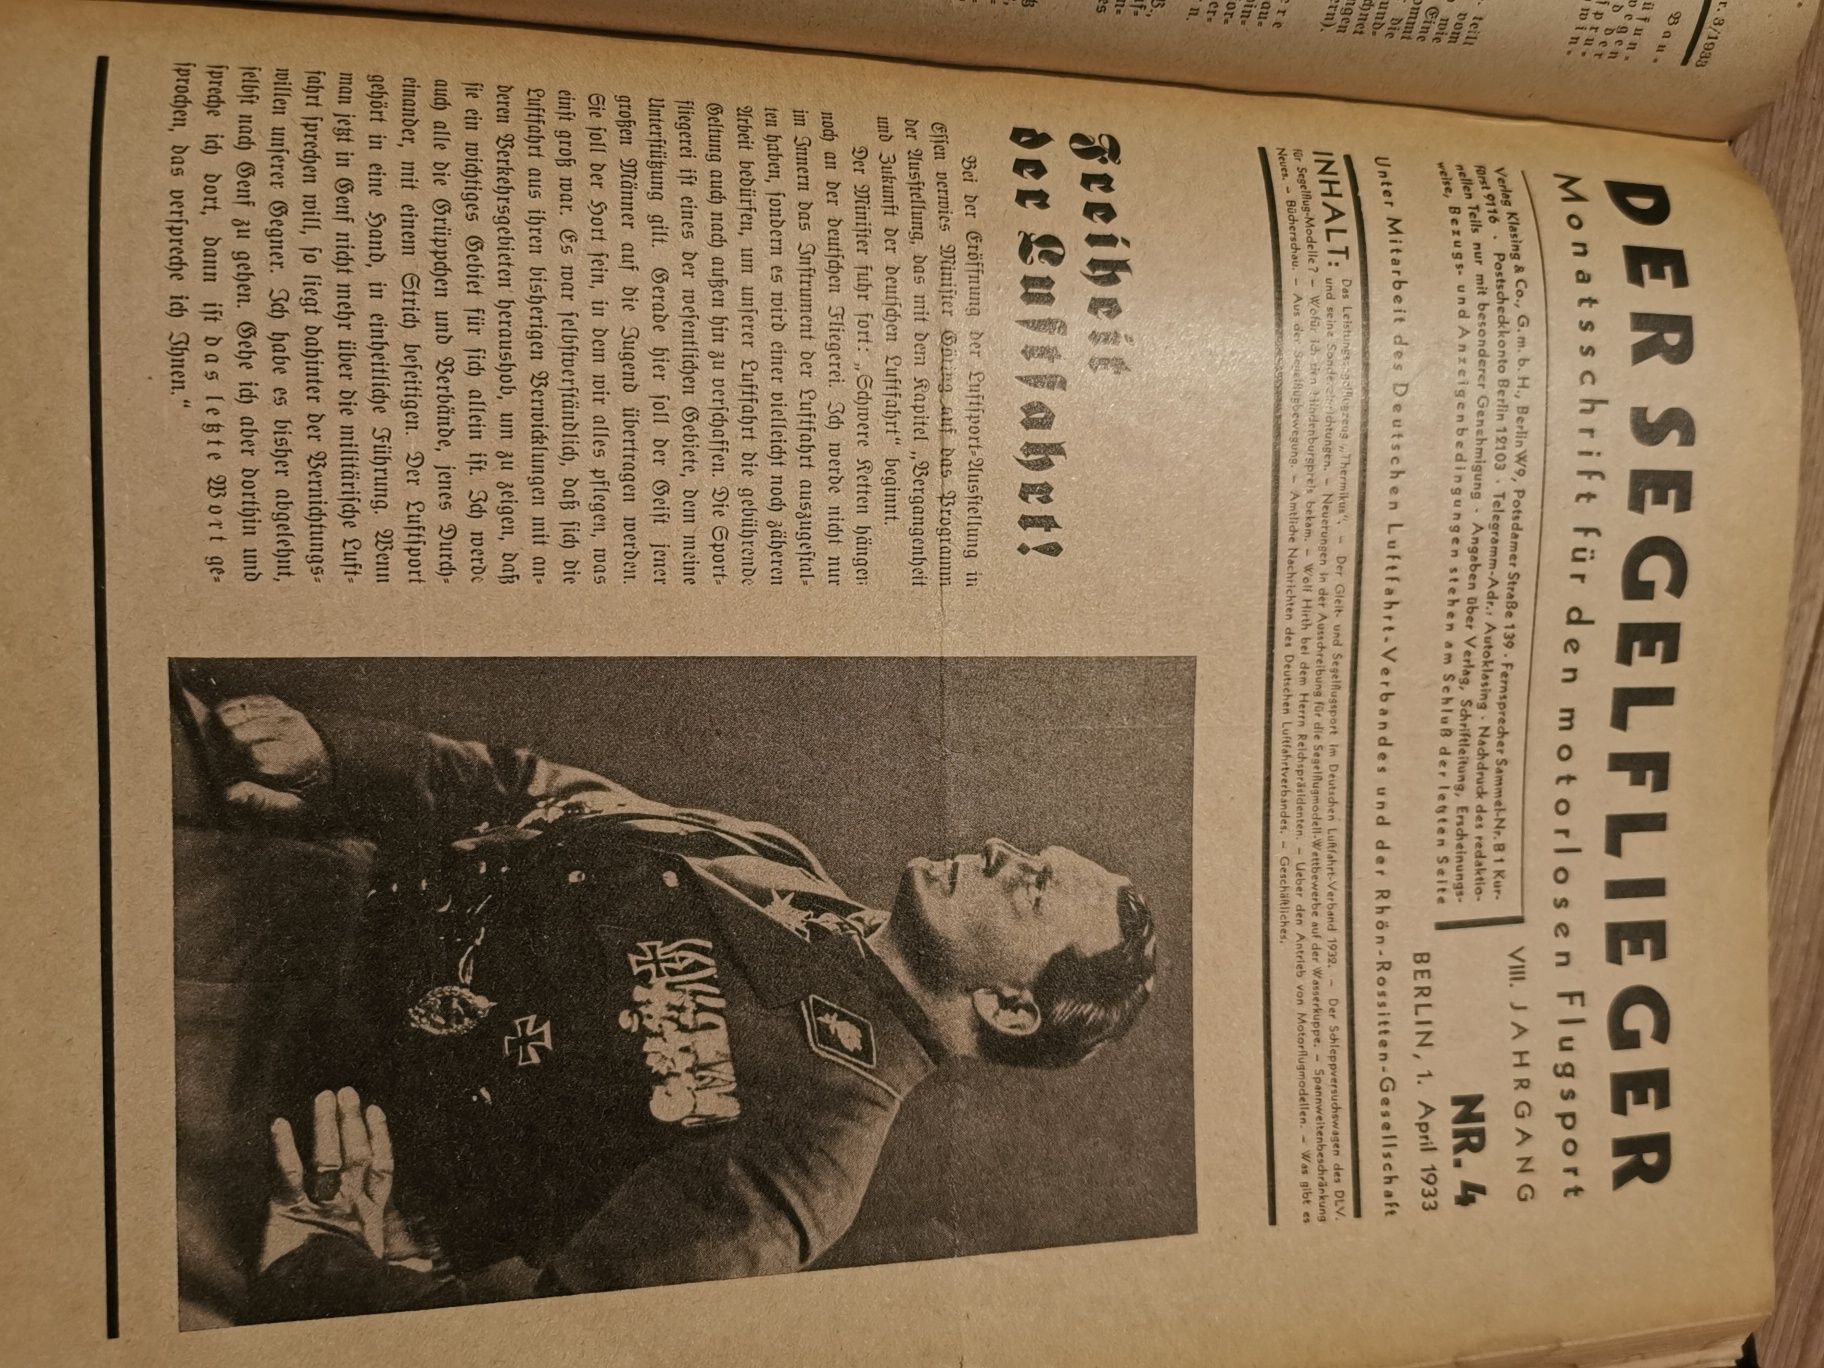 Niemieckie czasopismo lotnicze DER SEGELFLIEGER 1933 rok